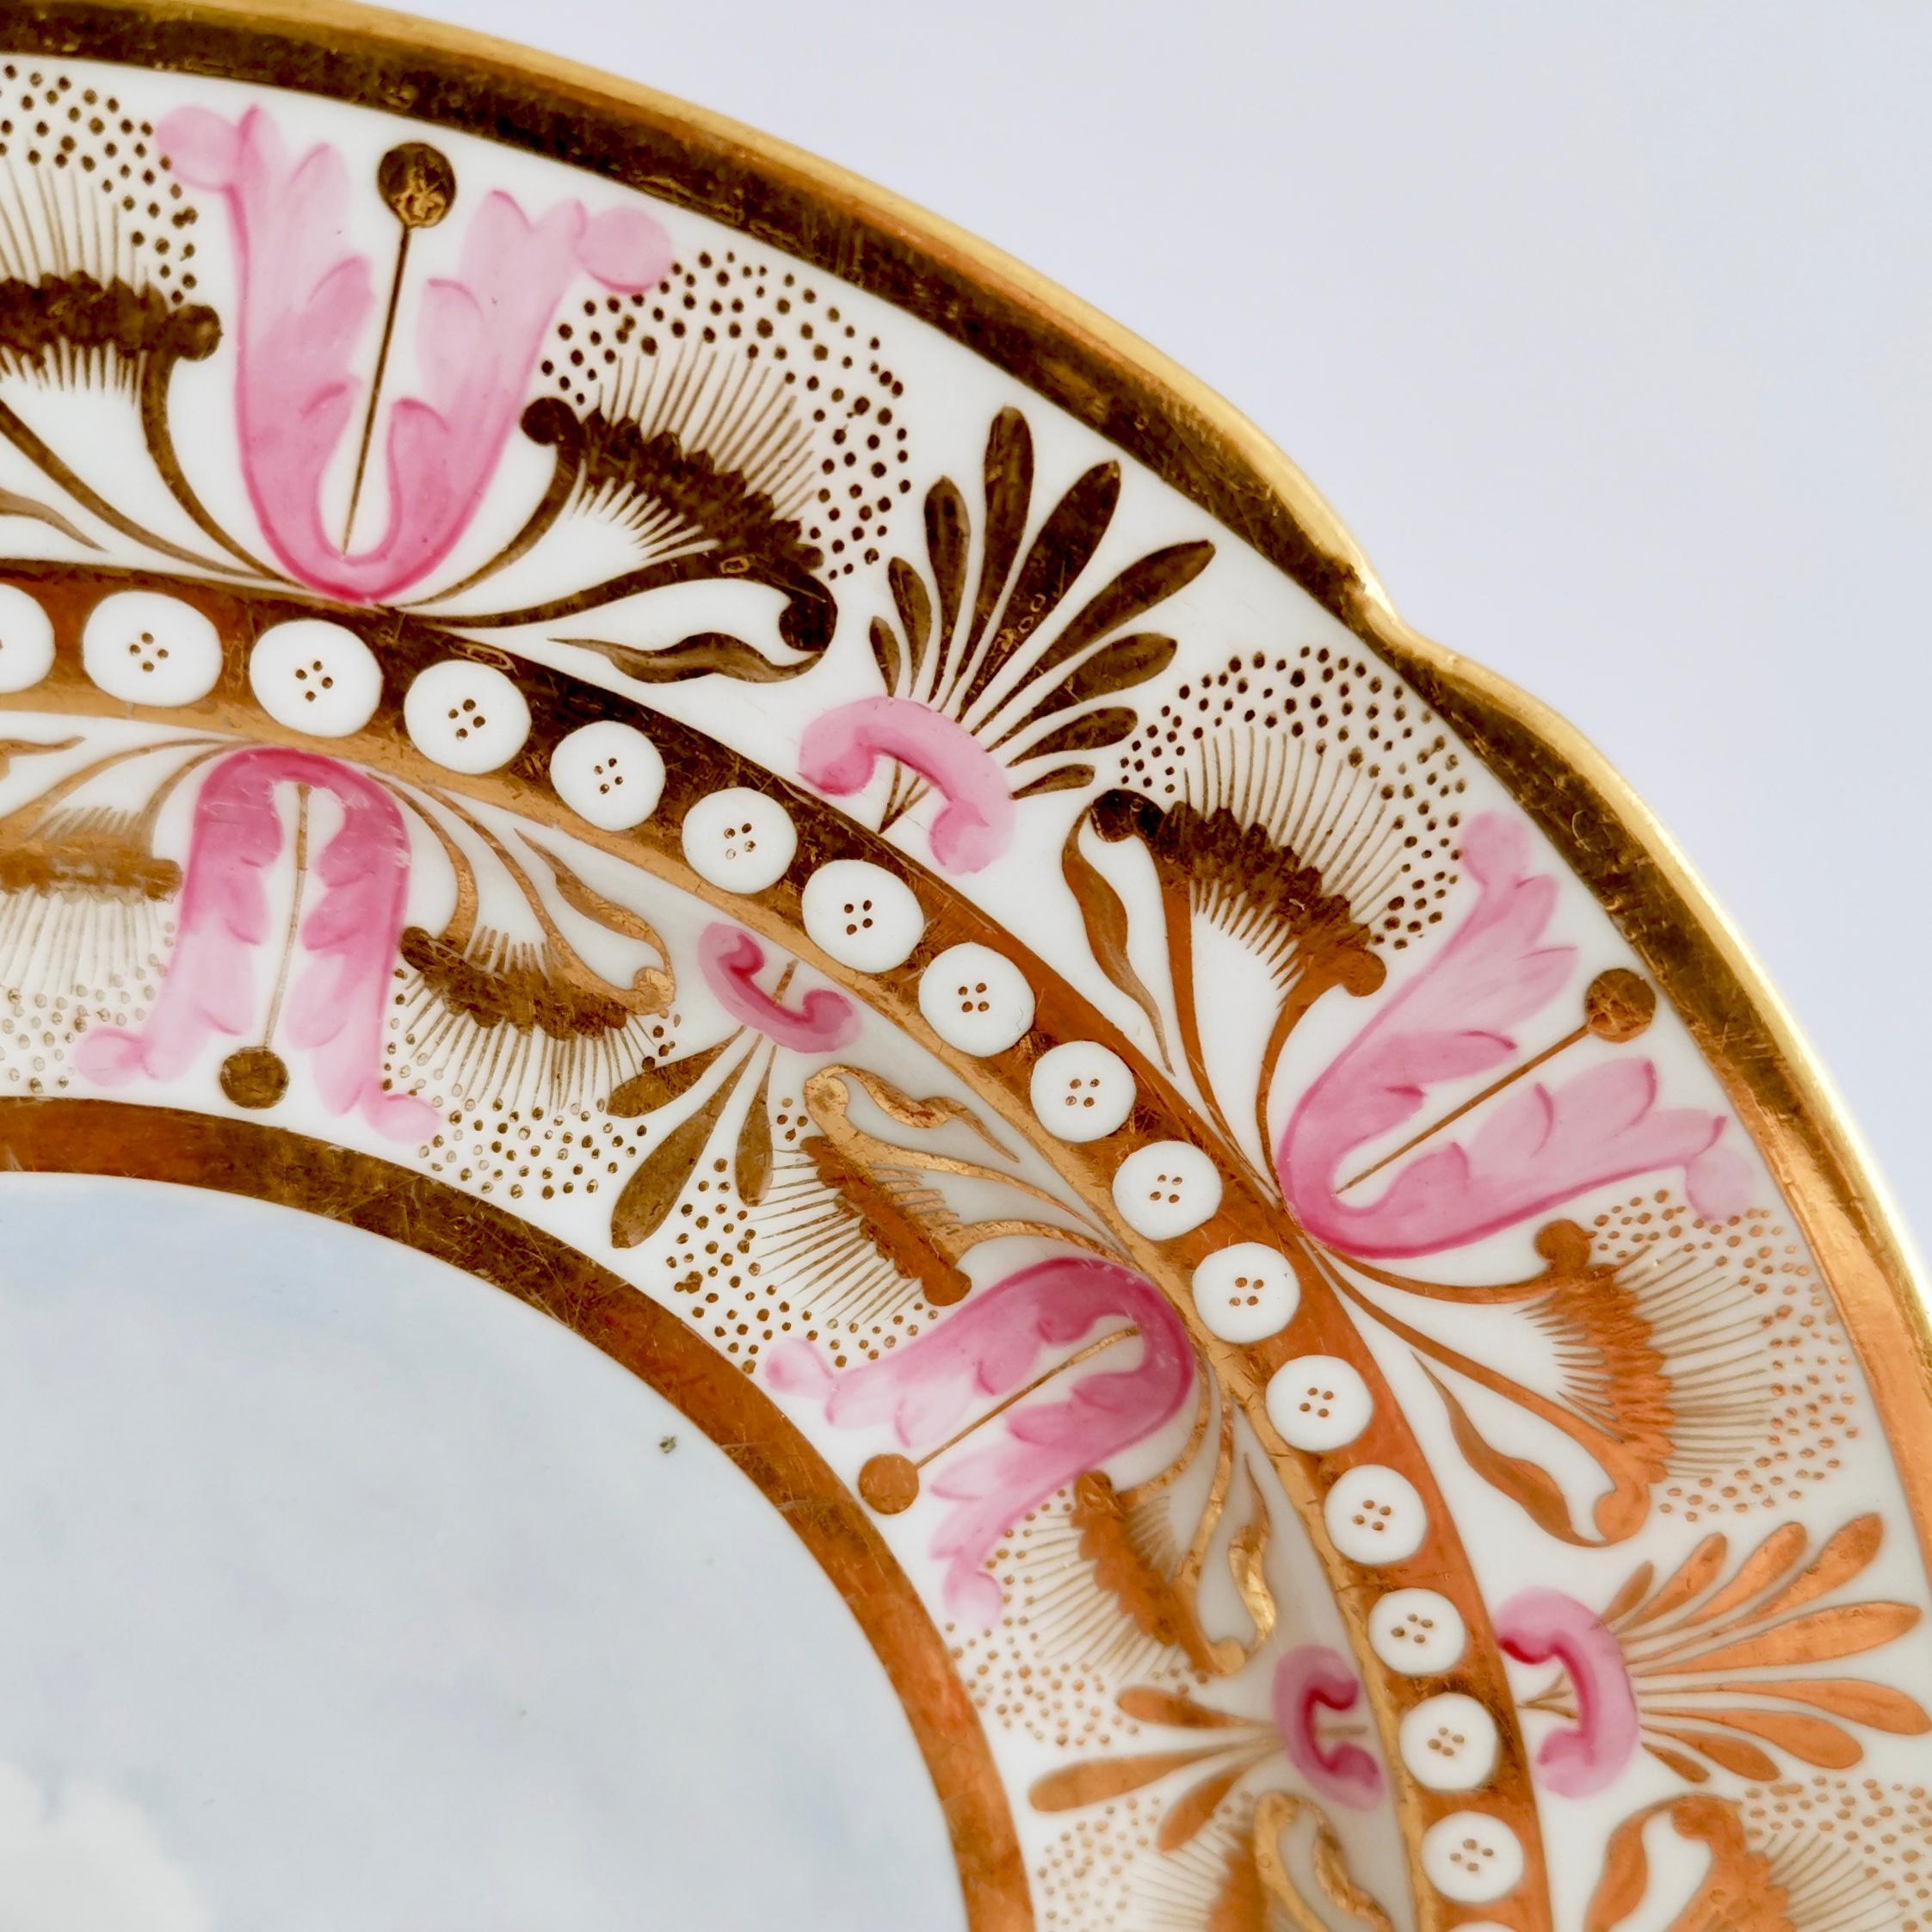 Porcelain Flight Barr & Barr Pink and Gilt Plate with River Landscape, Regency 1813-1825